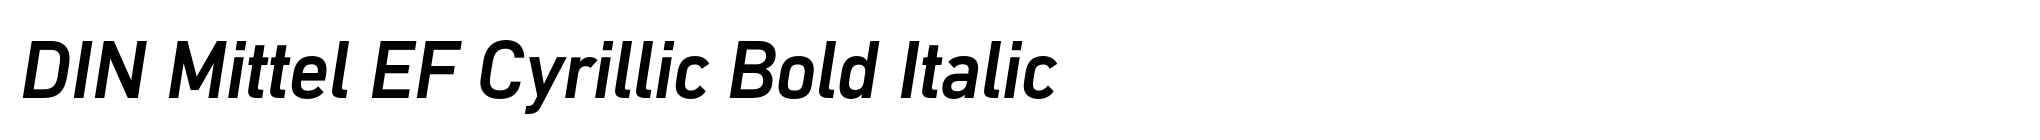 DIN Mittel EF Cyrillic Bold Italic image